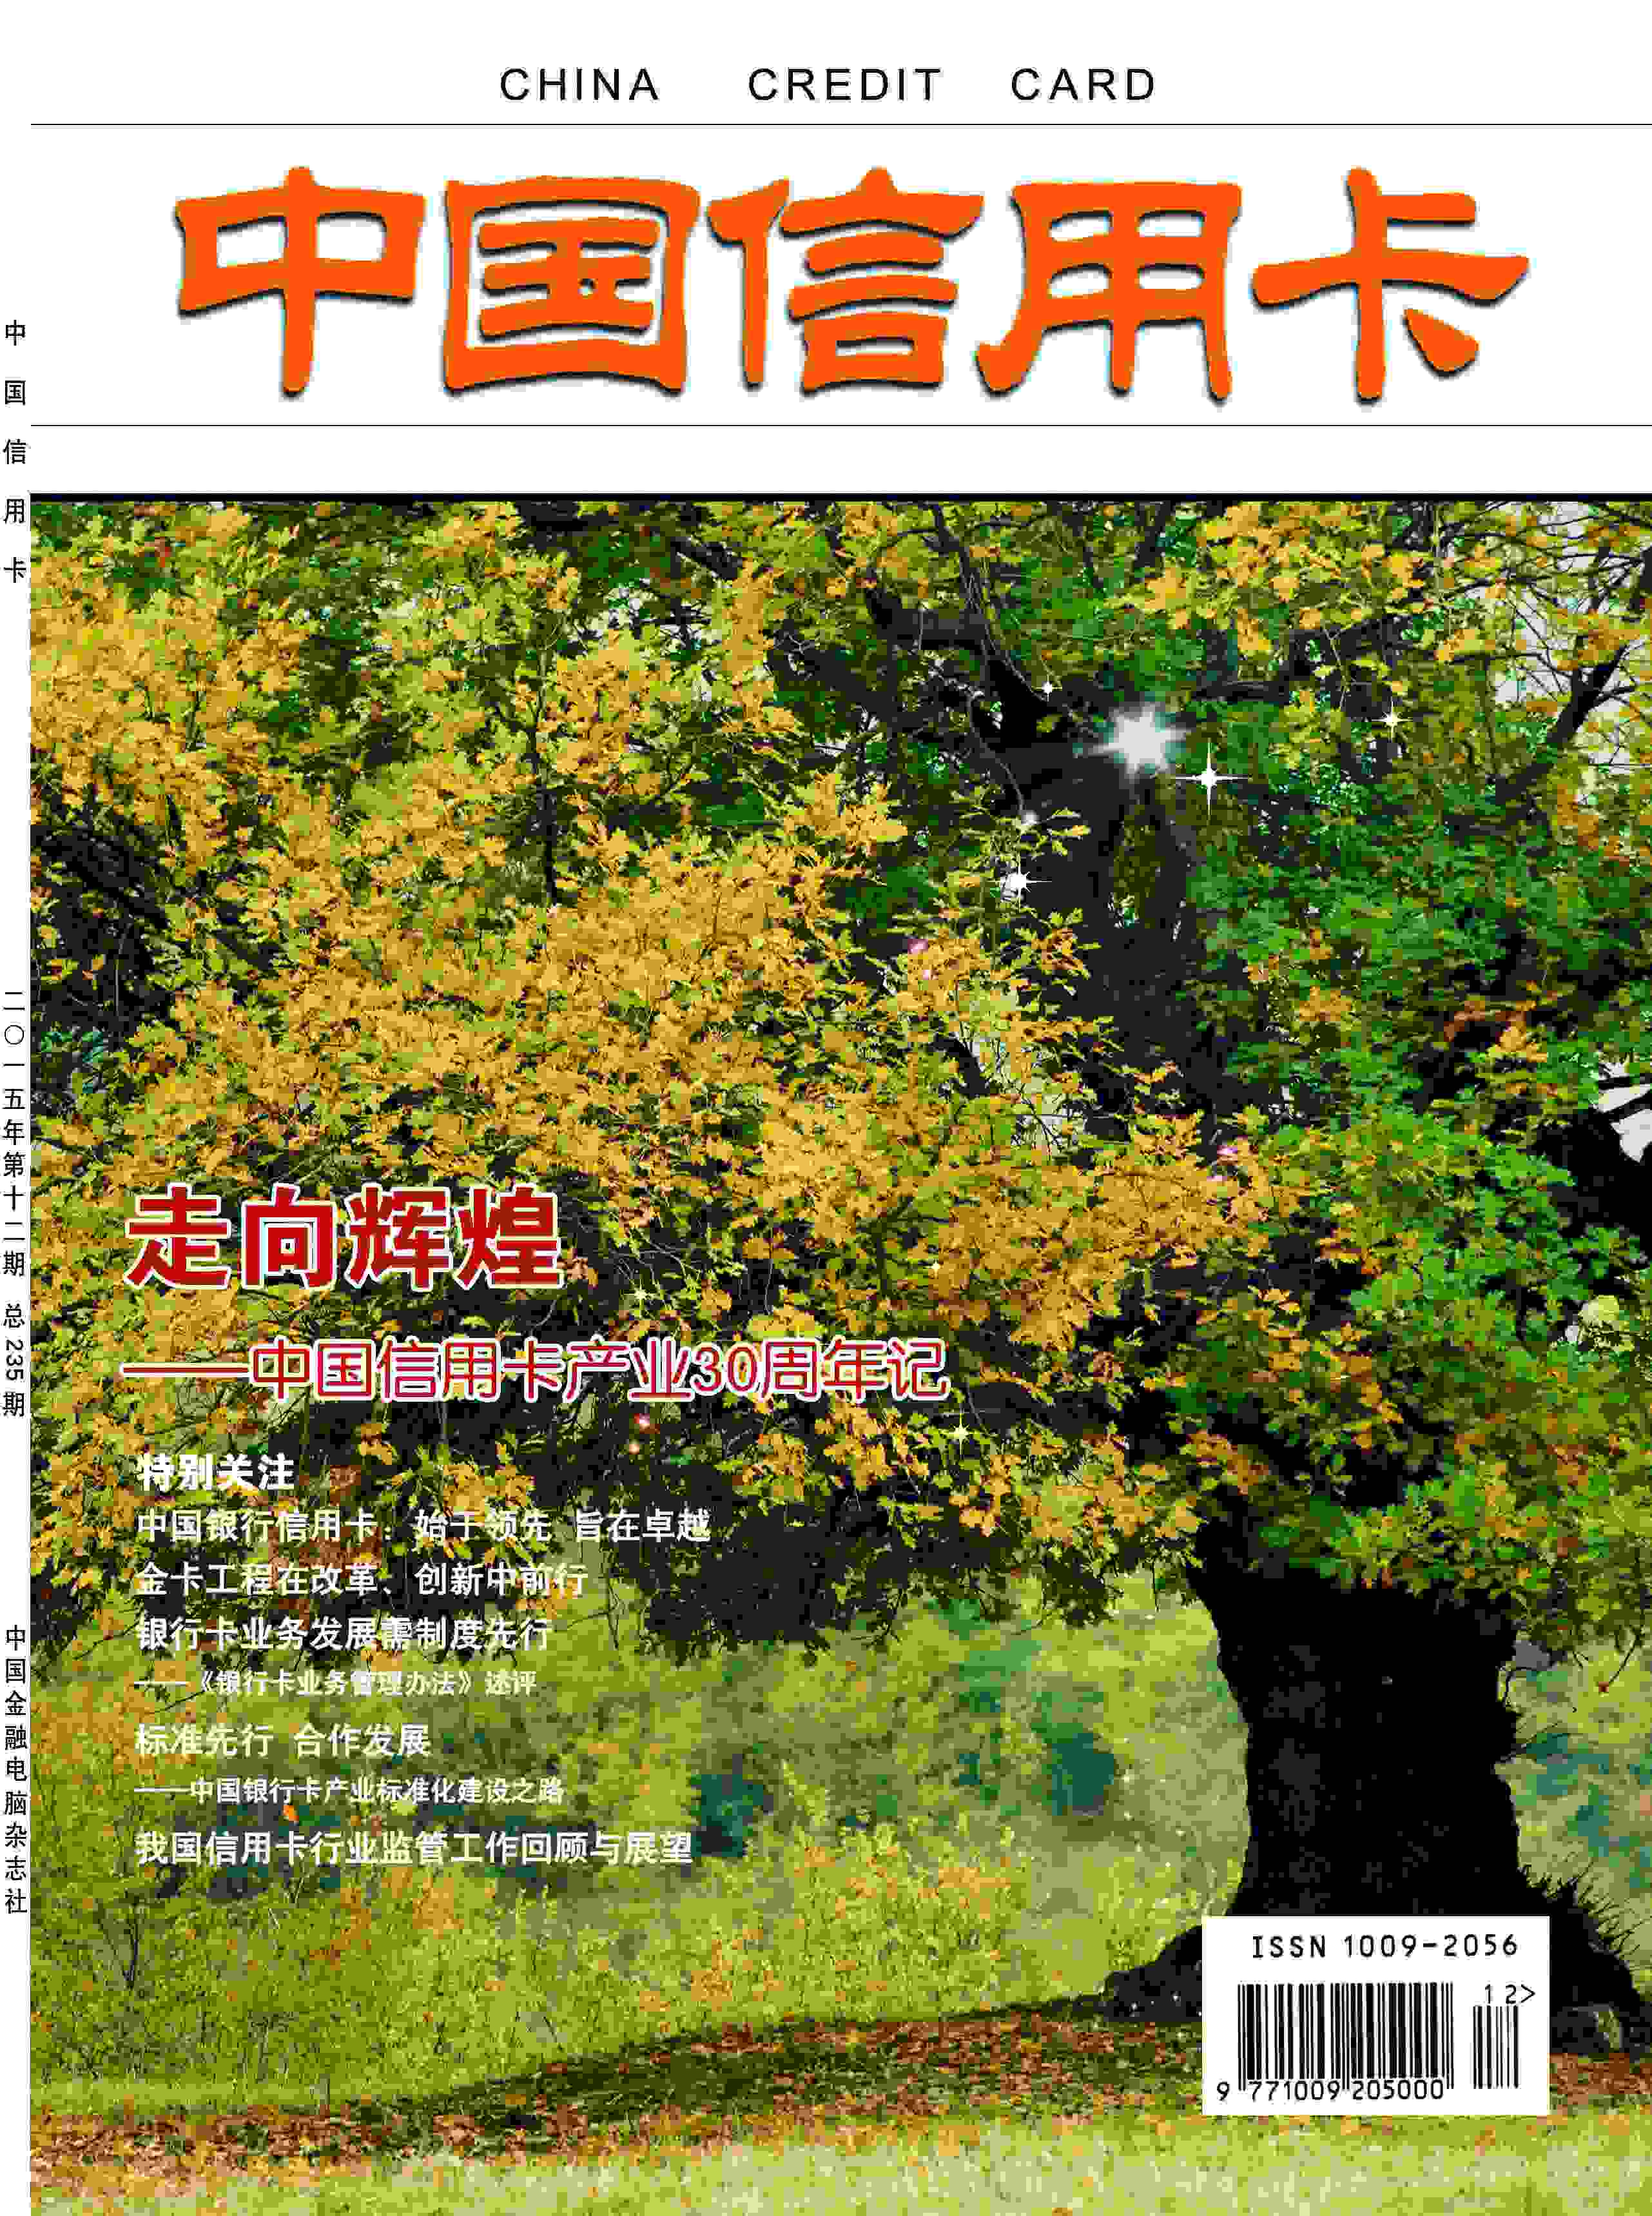 中国信用卡杂志杂志封面